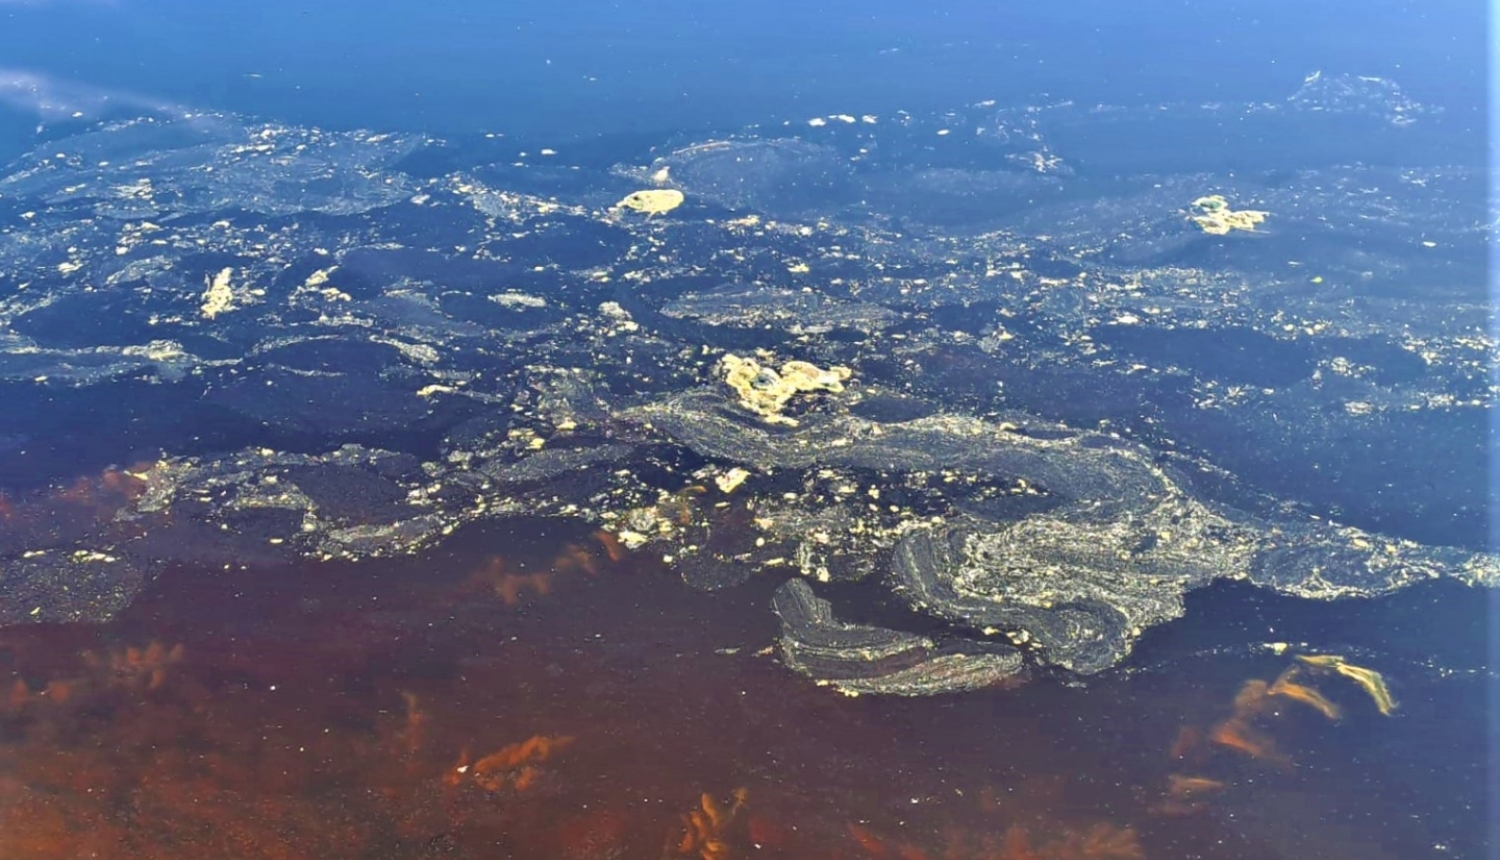 Latvijā ūdenstilpēs novērotie dzeltenie plankumi nav vides piesārņojums, bet priežu ziedputekšņi